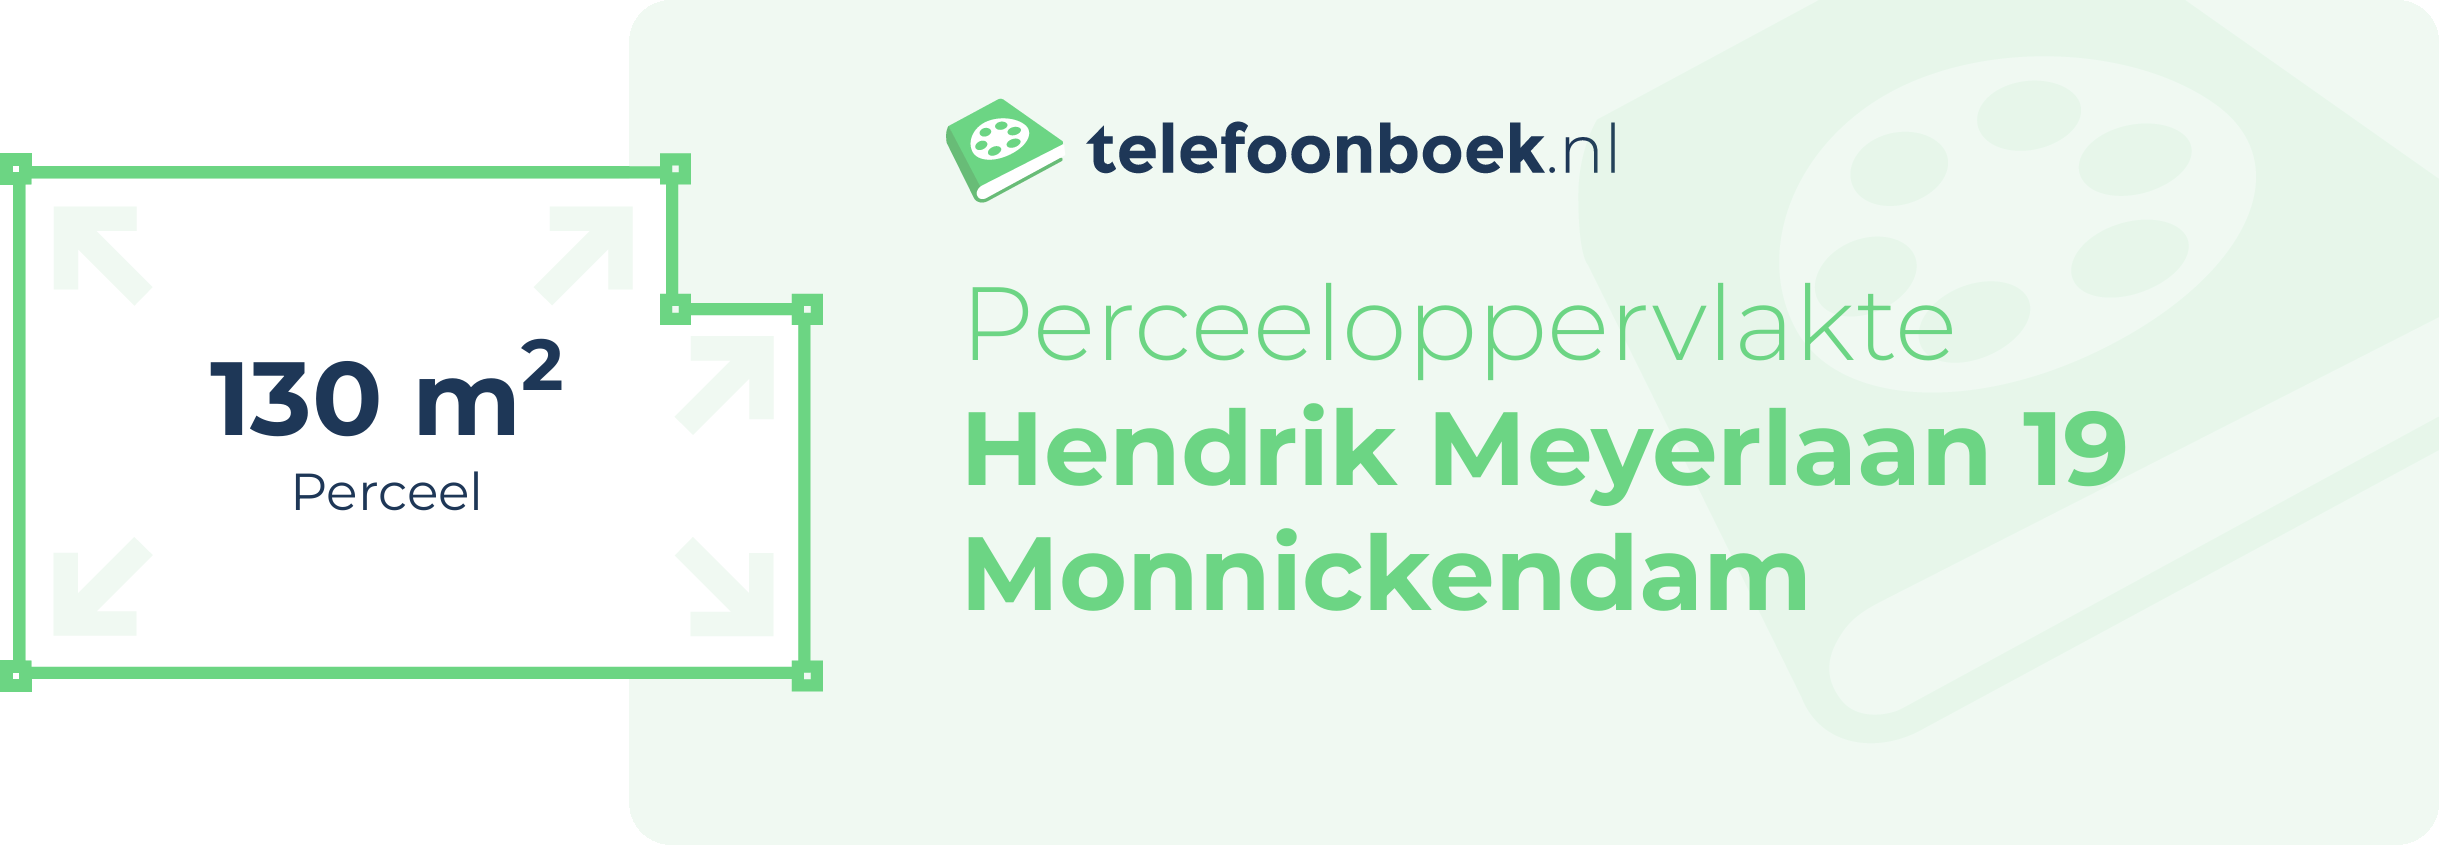 Perceeloppervlakte Hendrik Meyerlaan 19 Monnickendam